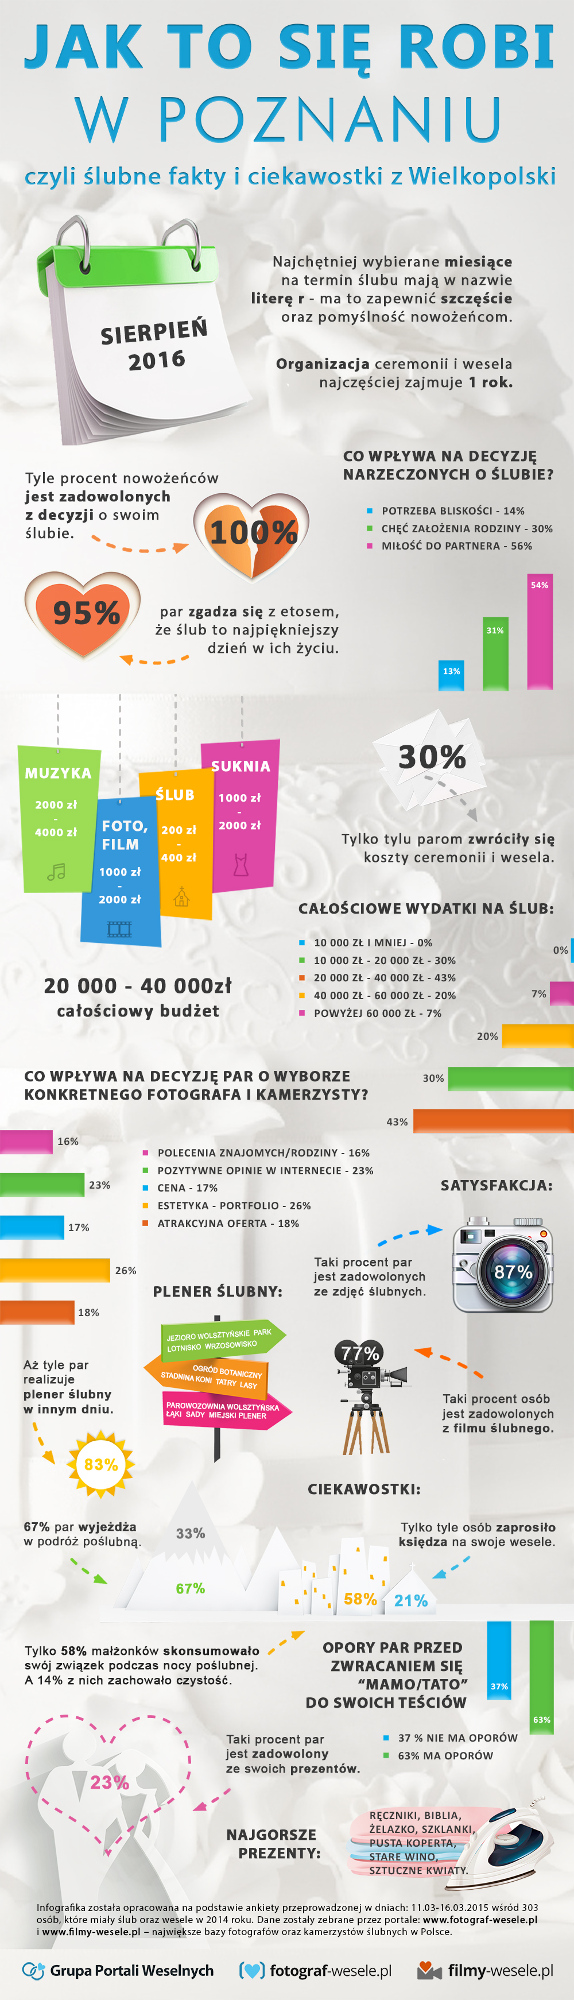 Jak to się robi w Poznaniu, czyli ślubne fakty i ciekawostki z Wielkopolski (infografika)